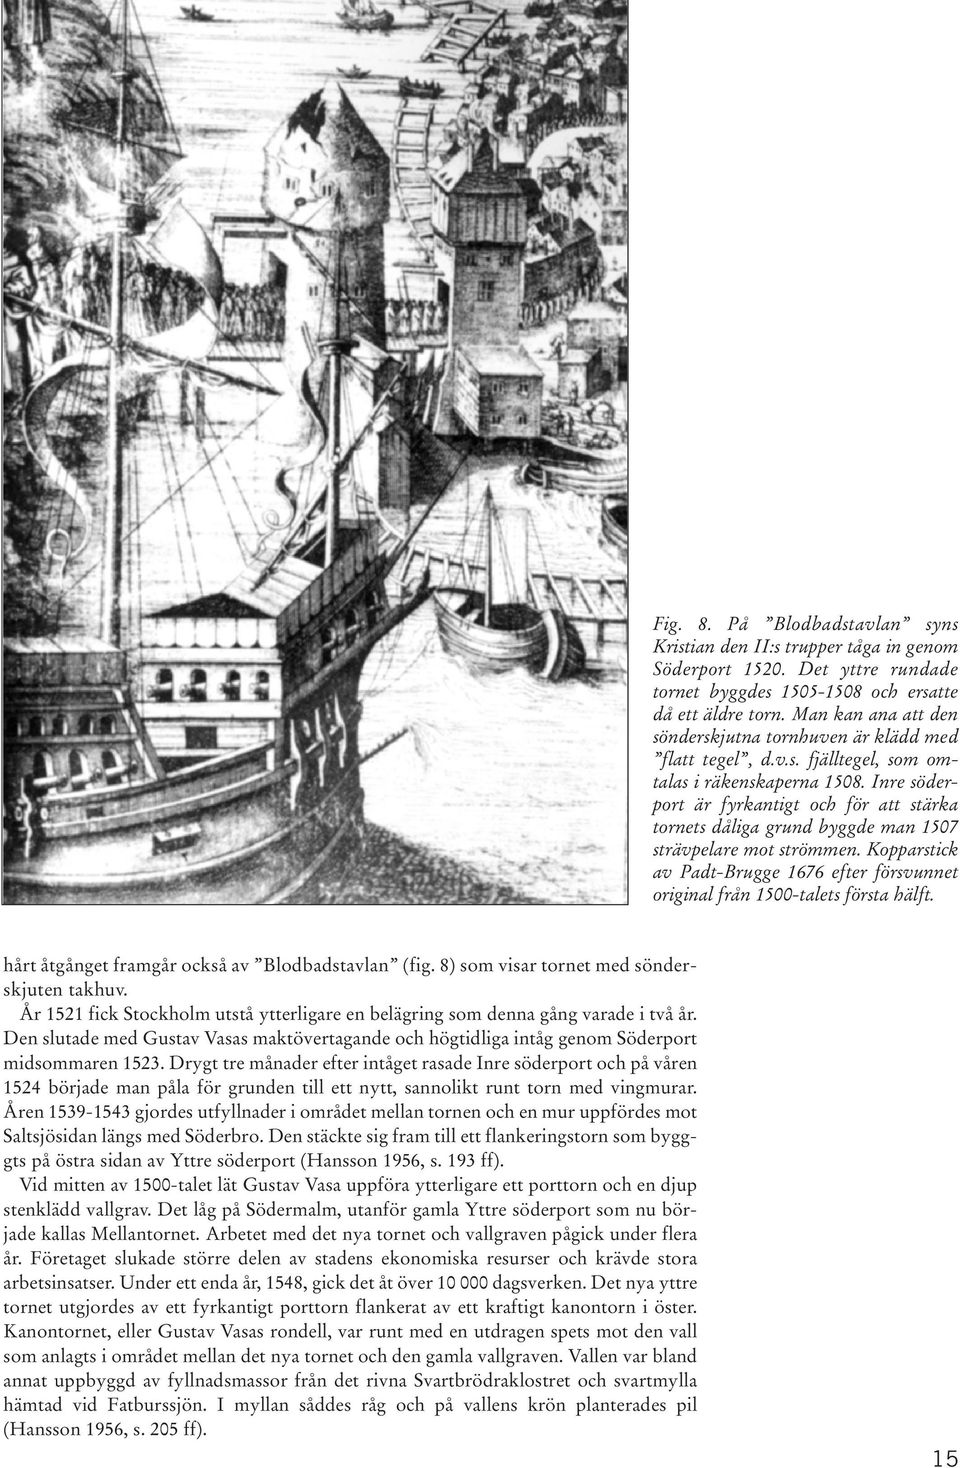 Inre söderport är fyrkantigt och för att stärka tornets dåliga grund byggde man 1507 strävpelare mot strömmen. Kopparstick av Padt-Brugge 1676 efter försvunnet original från 1500-talets första hälft.